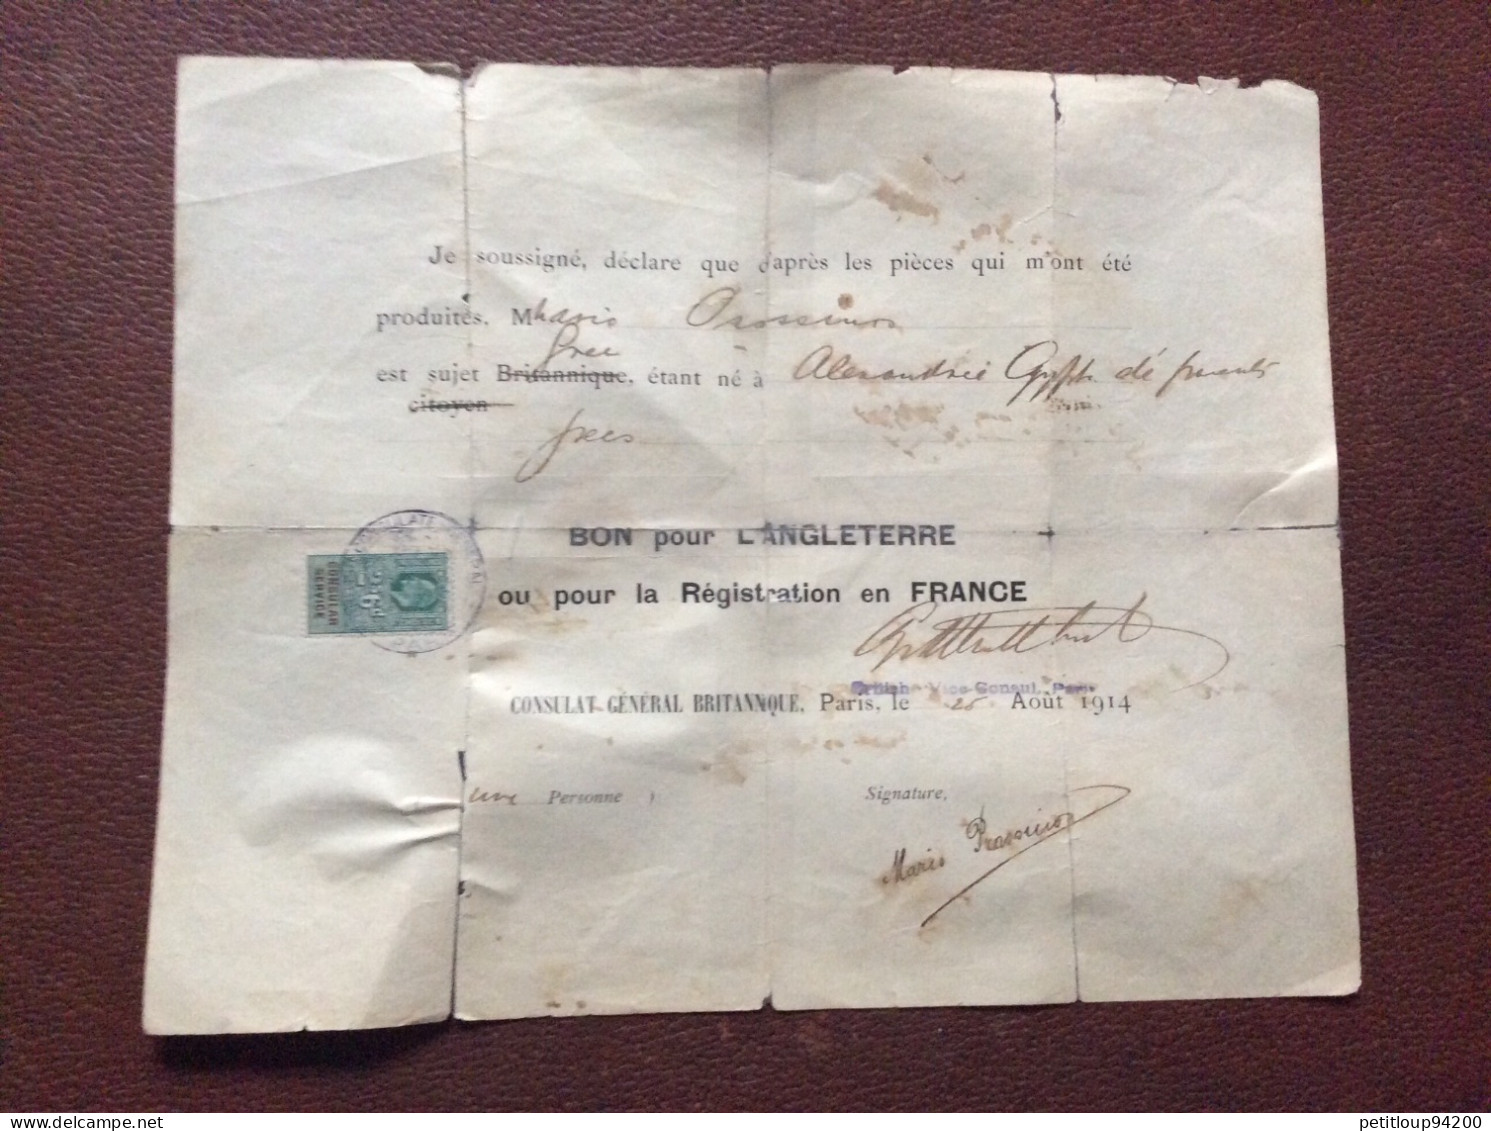 TIMBRE FISCAL SUR DOCUMENT Bon Pour L’ANGLETERRE  Registration En FRANCE  *2s 6d  CONSULAT GENERAL BRITANIQUE  1914 - Fiscales